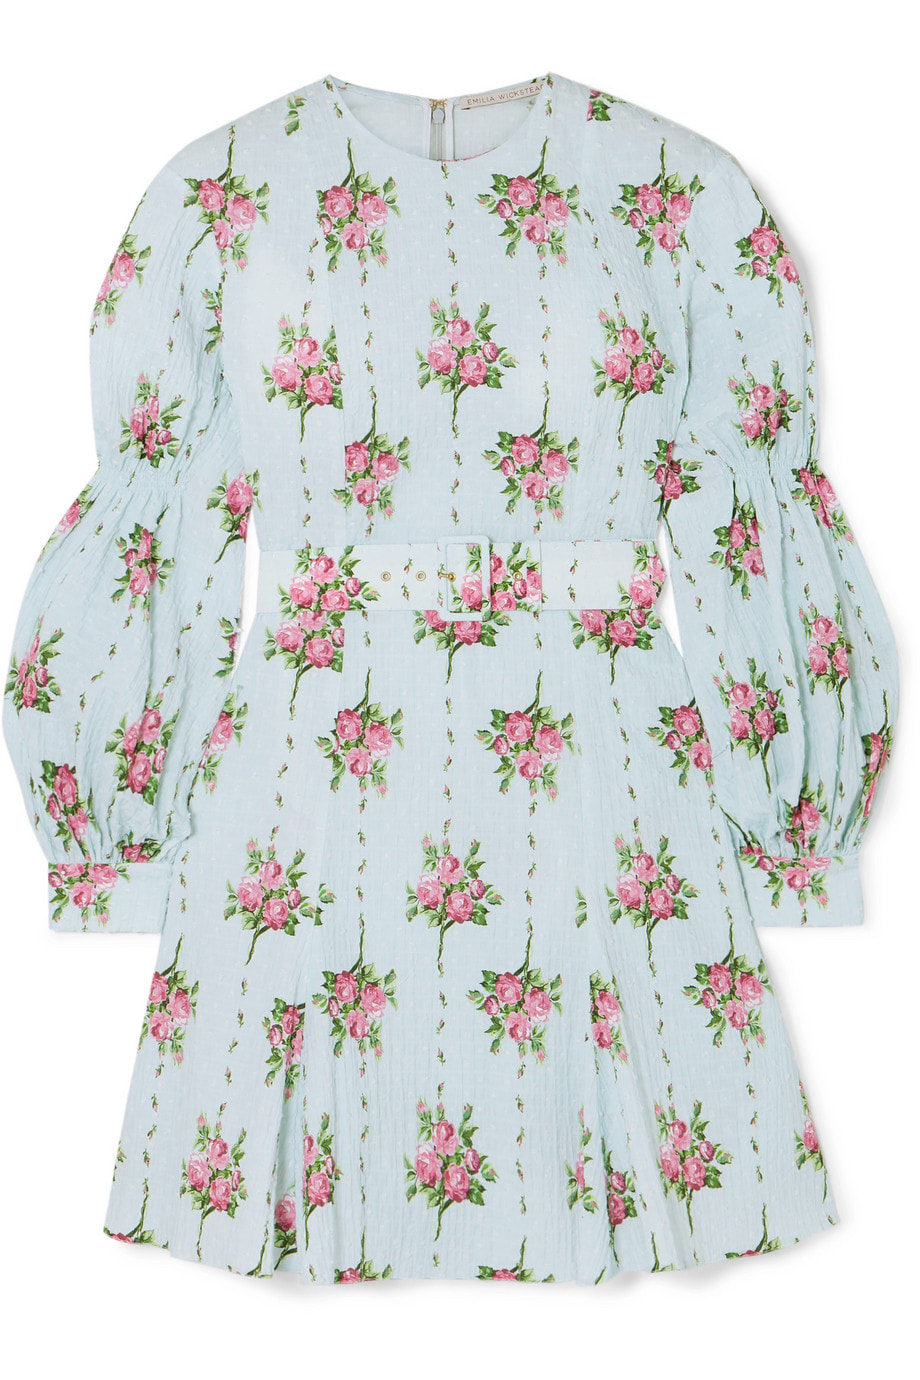 Emilia Wickstead Floral-print Swiss-dot cotton-blend seersucker mini dress